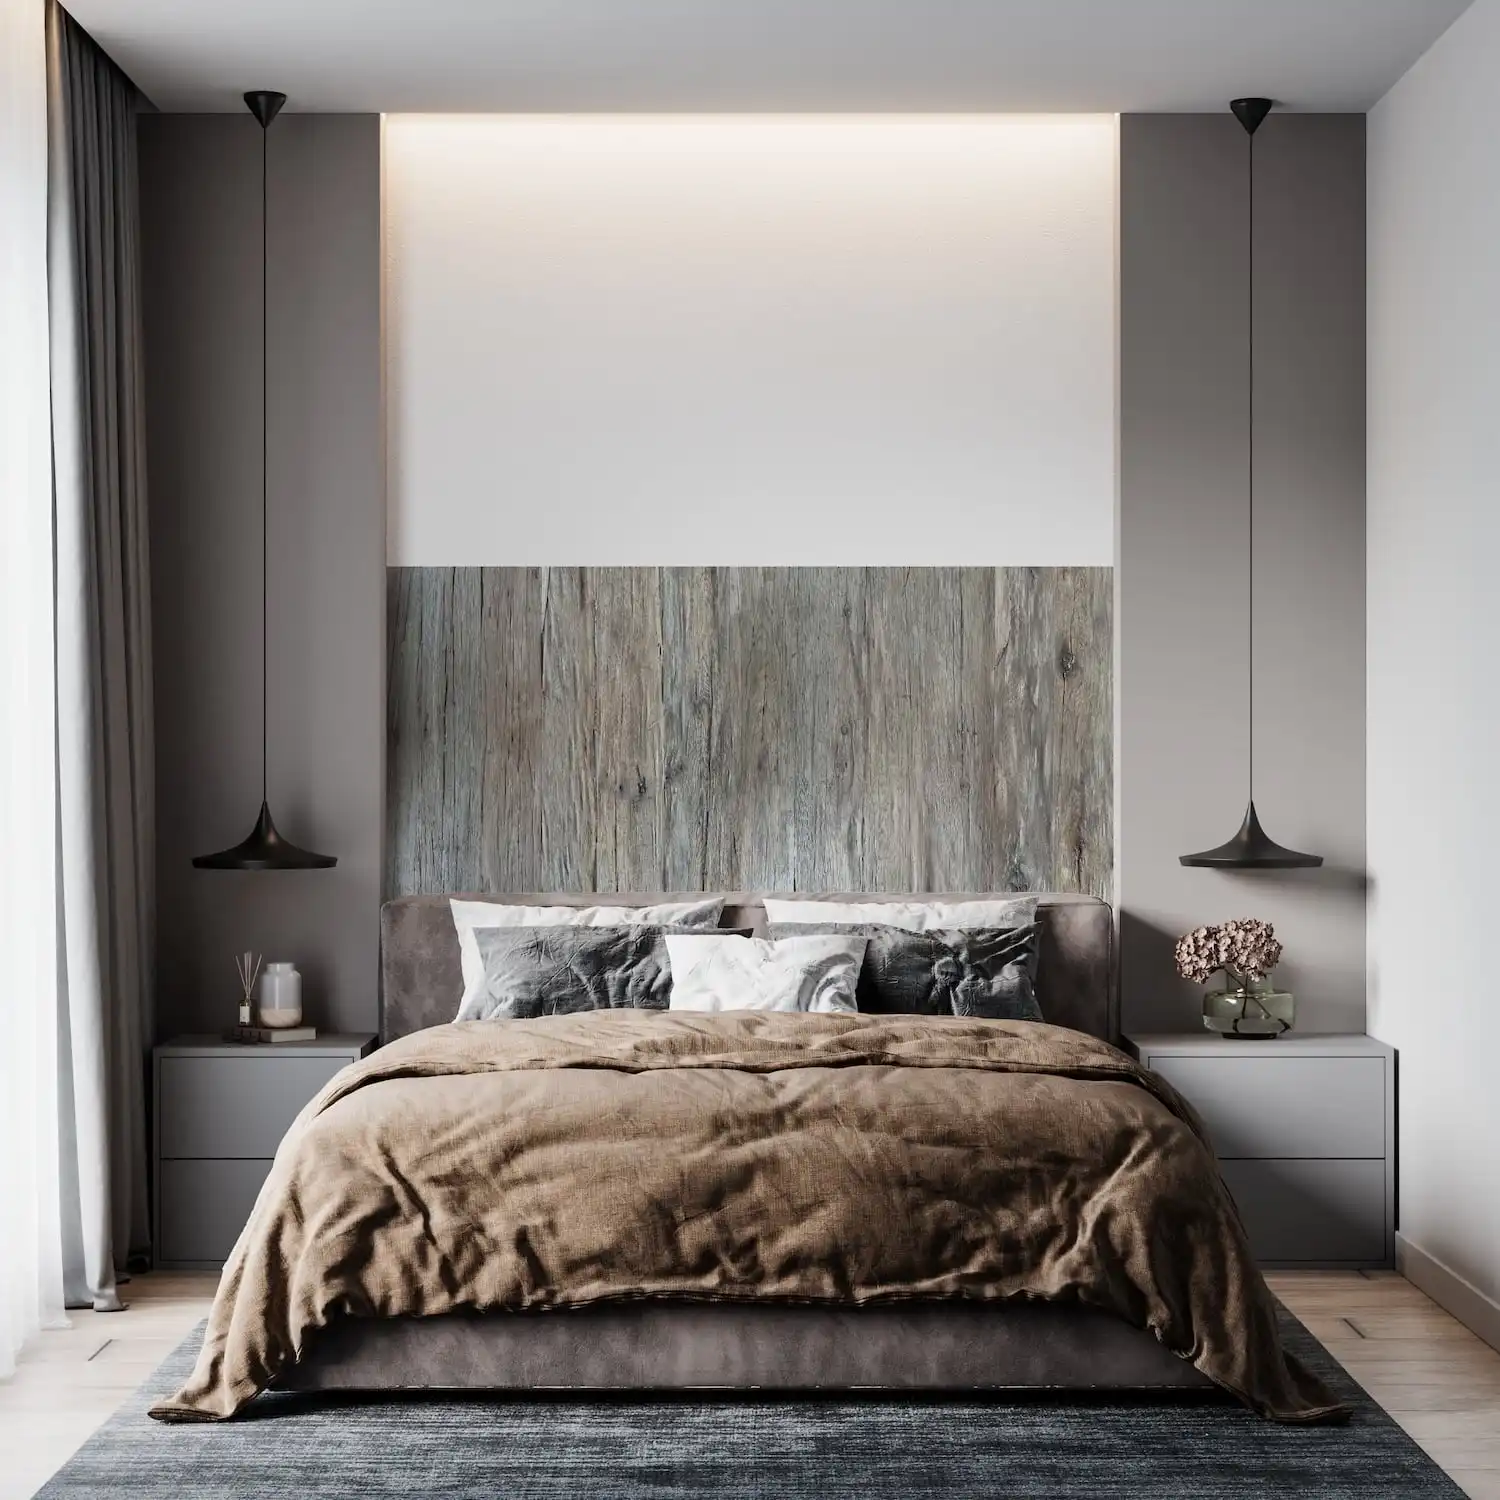  Une chambre moderne comprenant un grand lit avec une literie marron, un appui-tête gris, un panneau mural en bois vieilli et un éclairage de chevet minimaliste. 